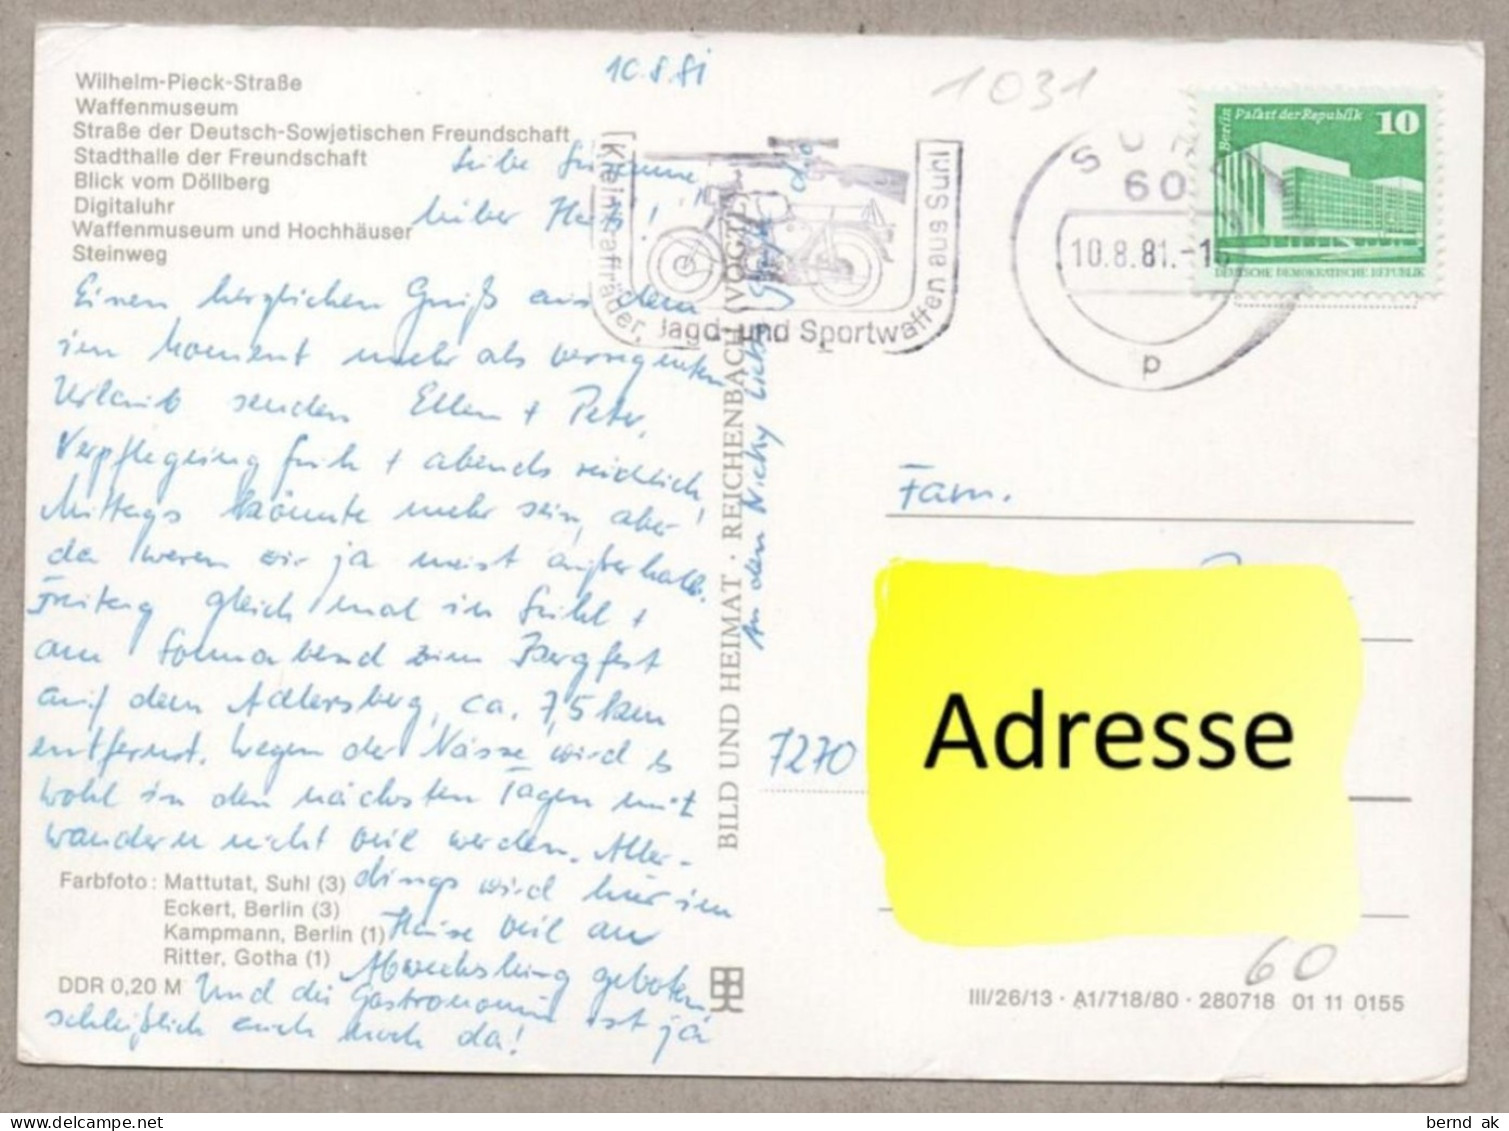 029#  BRD - 6 Color- AK: Suhl - Waffenmuseum, Rathaus, Warenhaus, Interhotel (alle Karten im Bild)